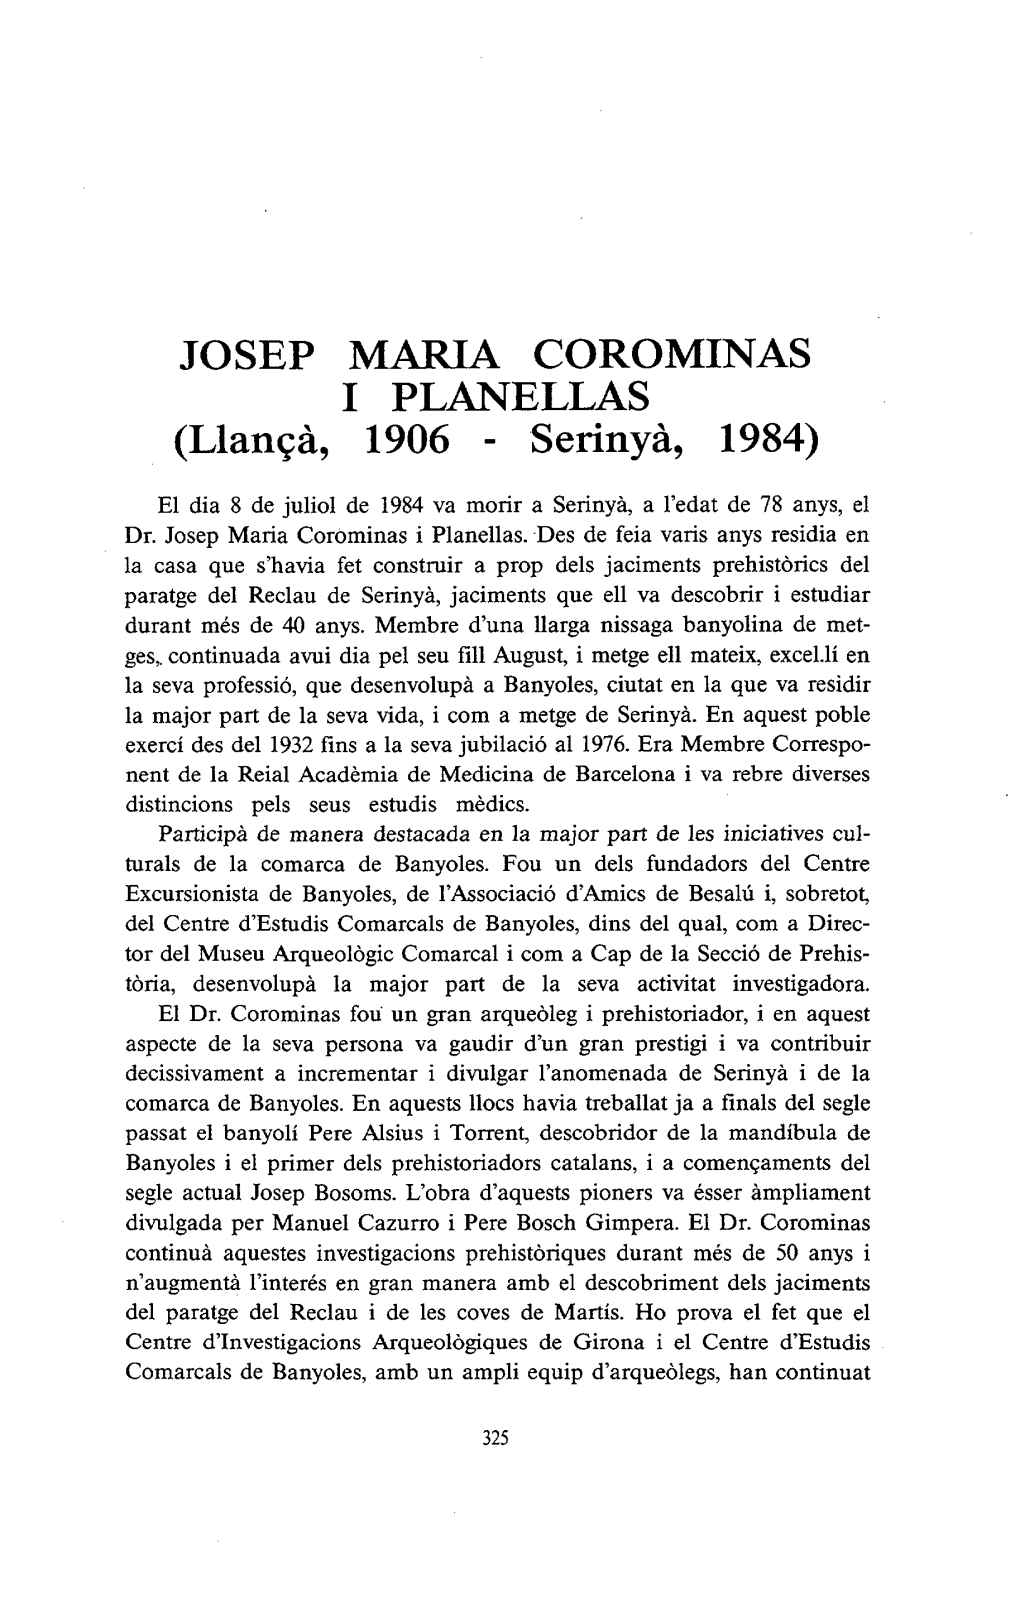 JOSEP MARIA COROMINAS I PLANELLAS (Llançà, 1906 - Serinyà, 1984)